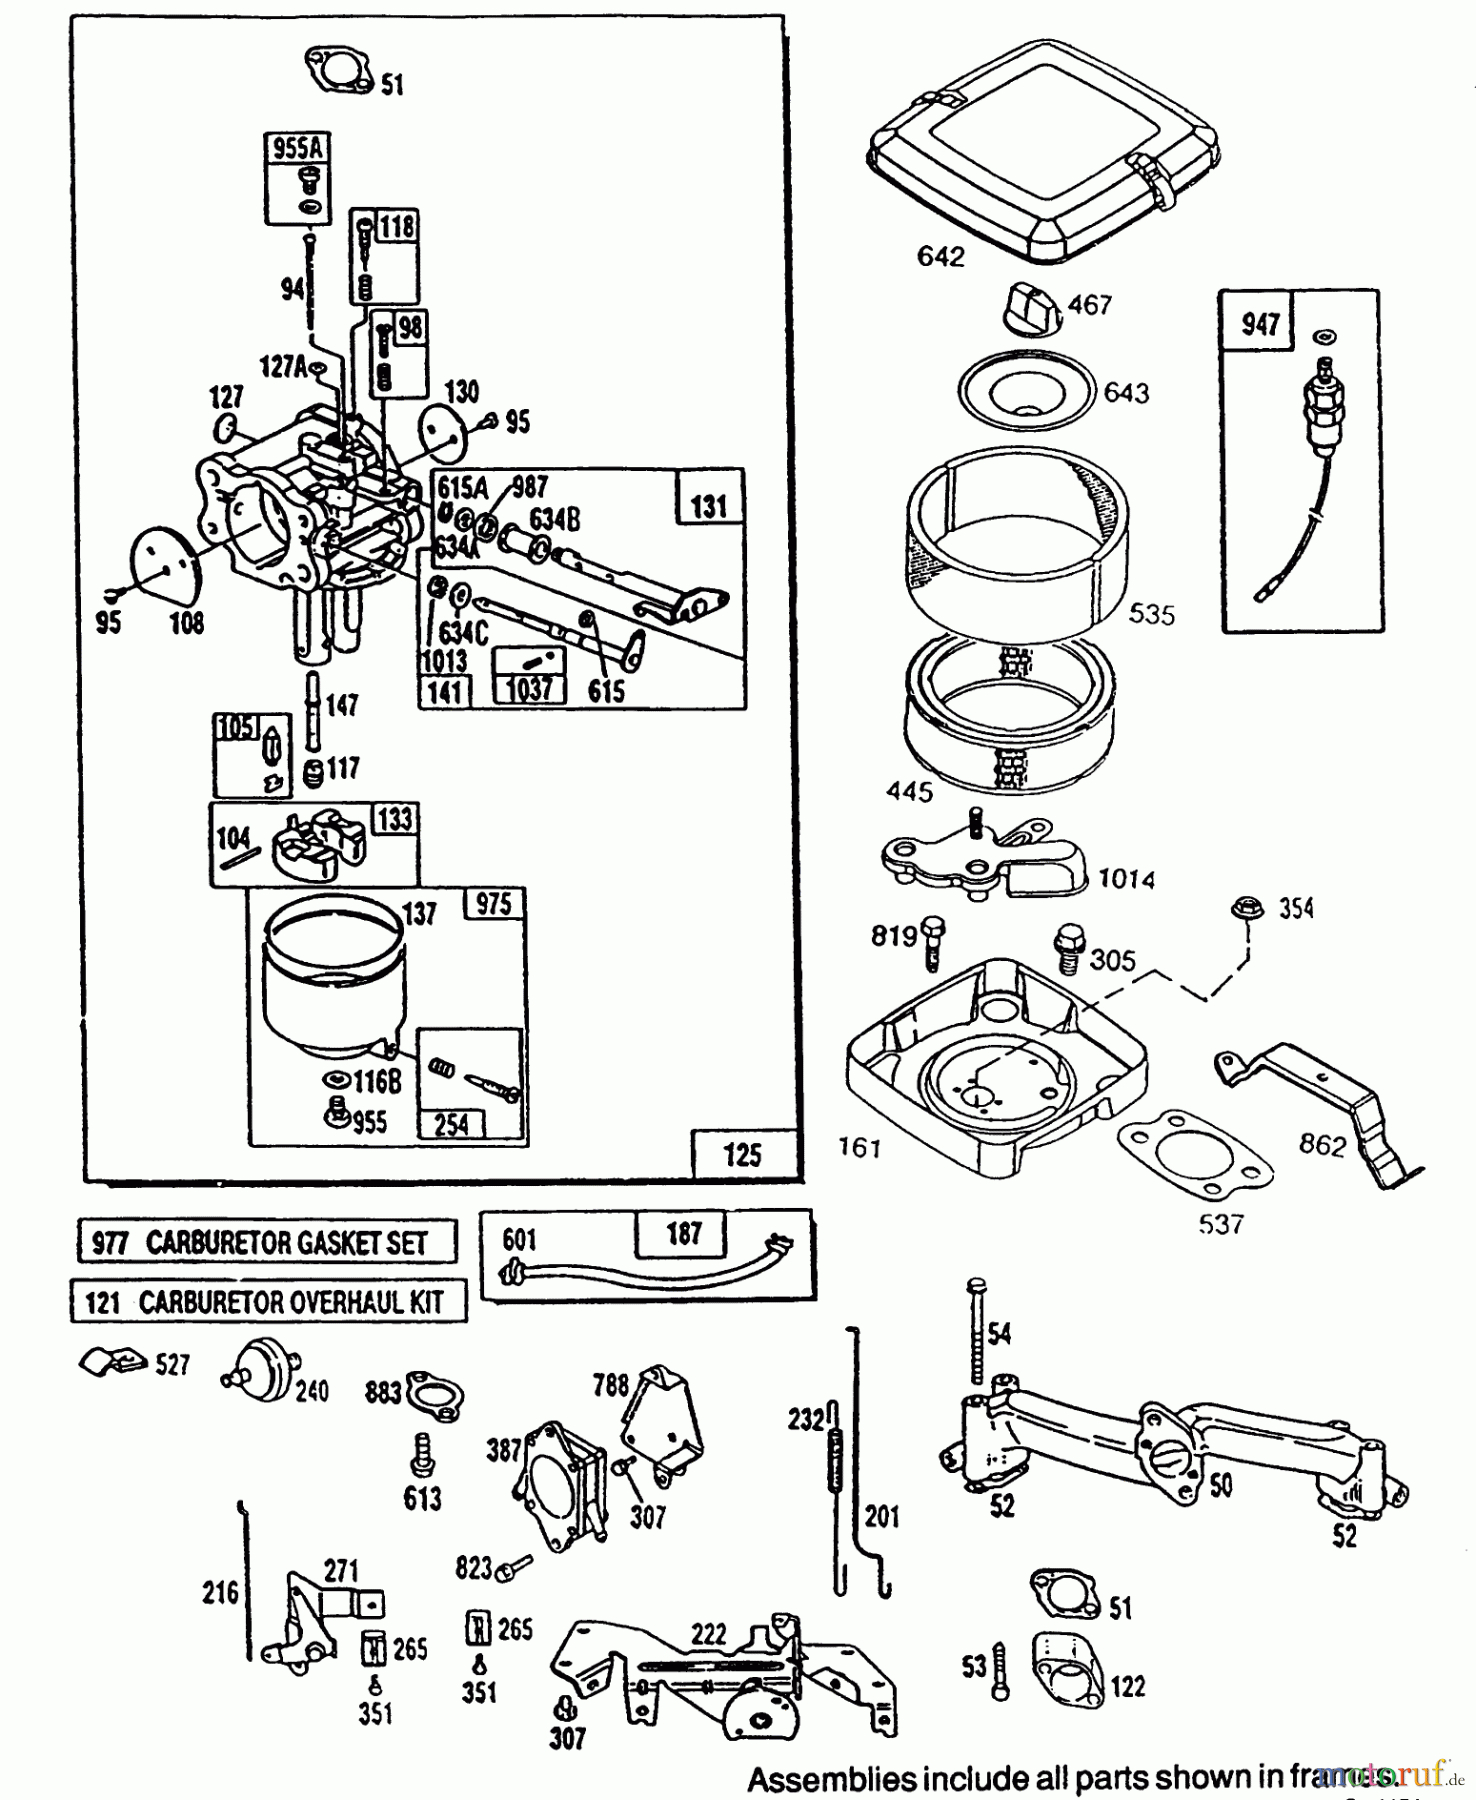  Toro Neu Mowers, Lawn & Garden Tractor Seite 1 72081 (246-H) - Toro 246-H Yard Tractor, 1993 (3900001-3999999) ENGINE TORO POWER PLUS #2